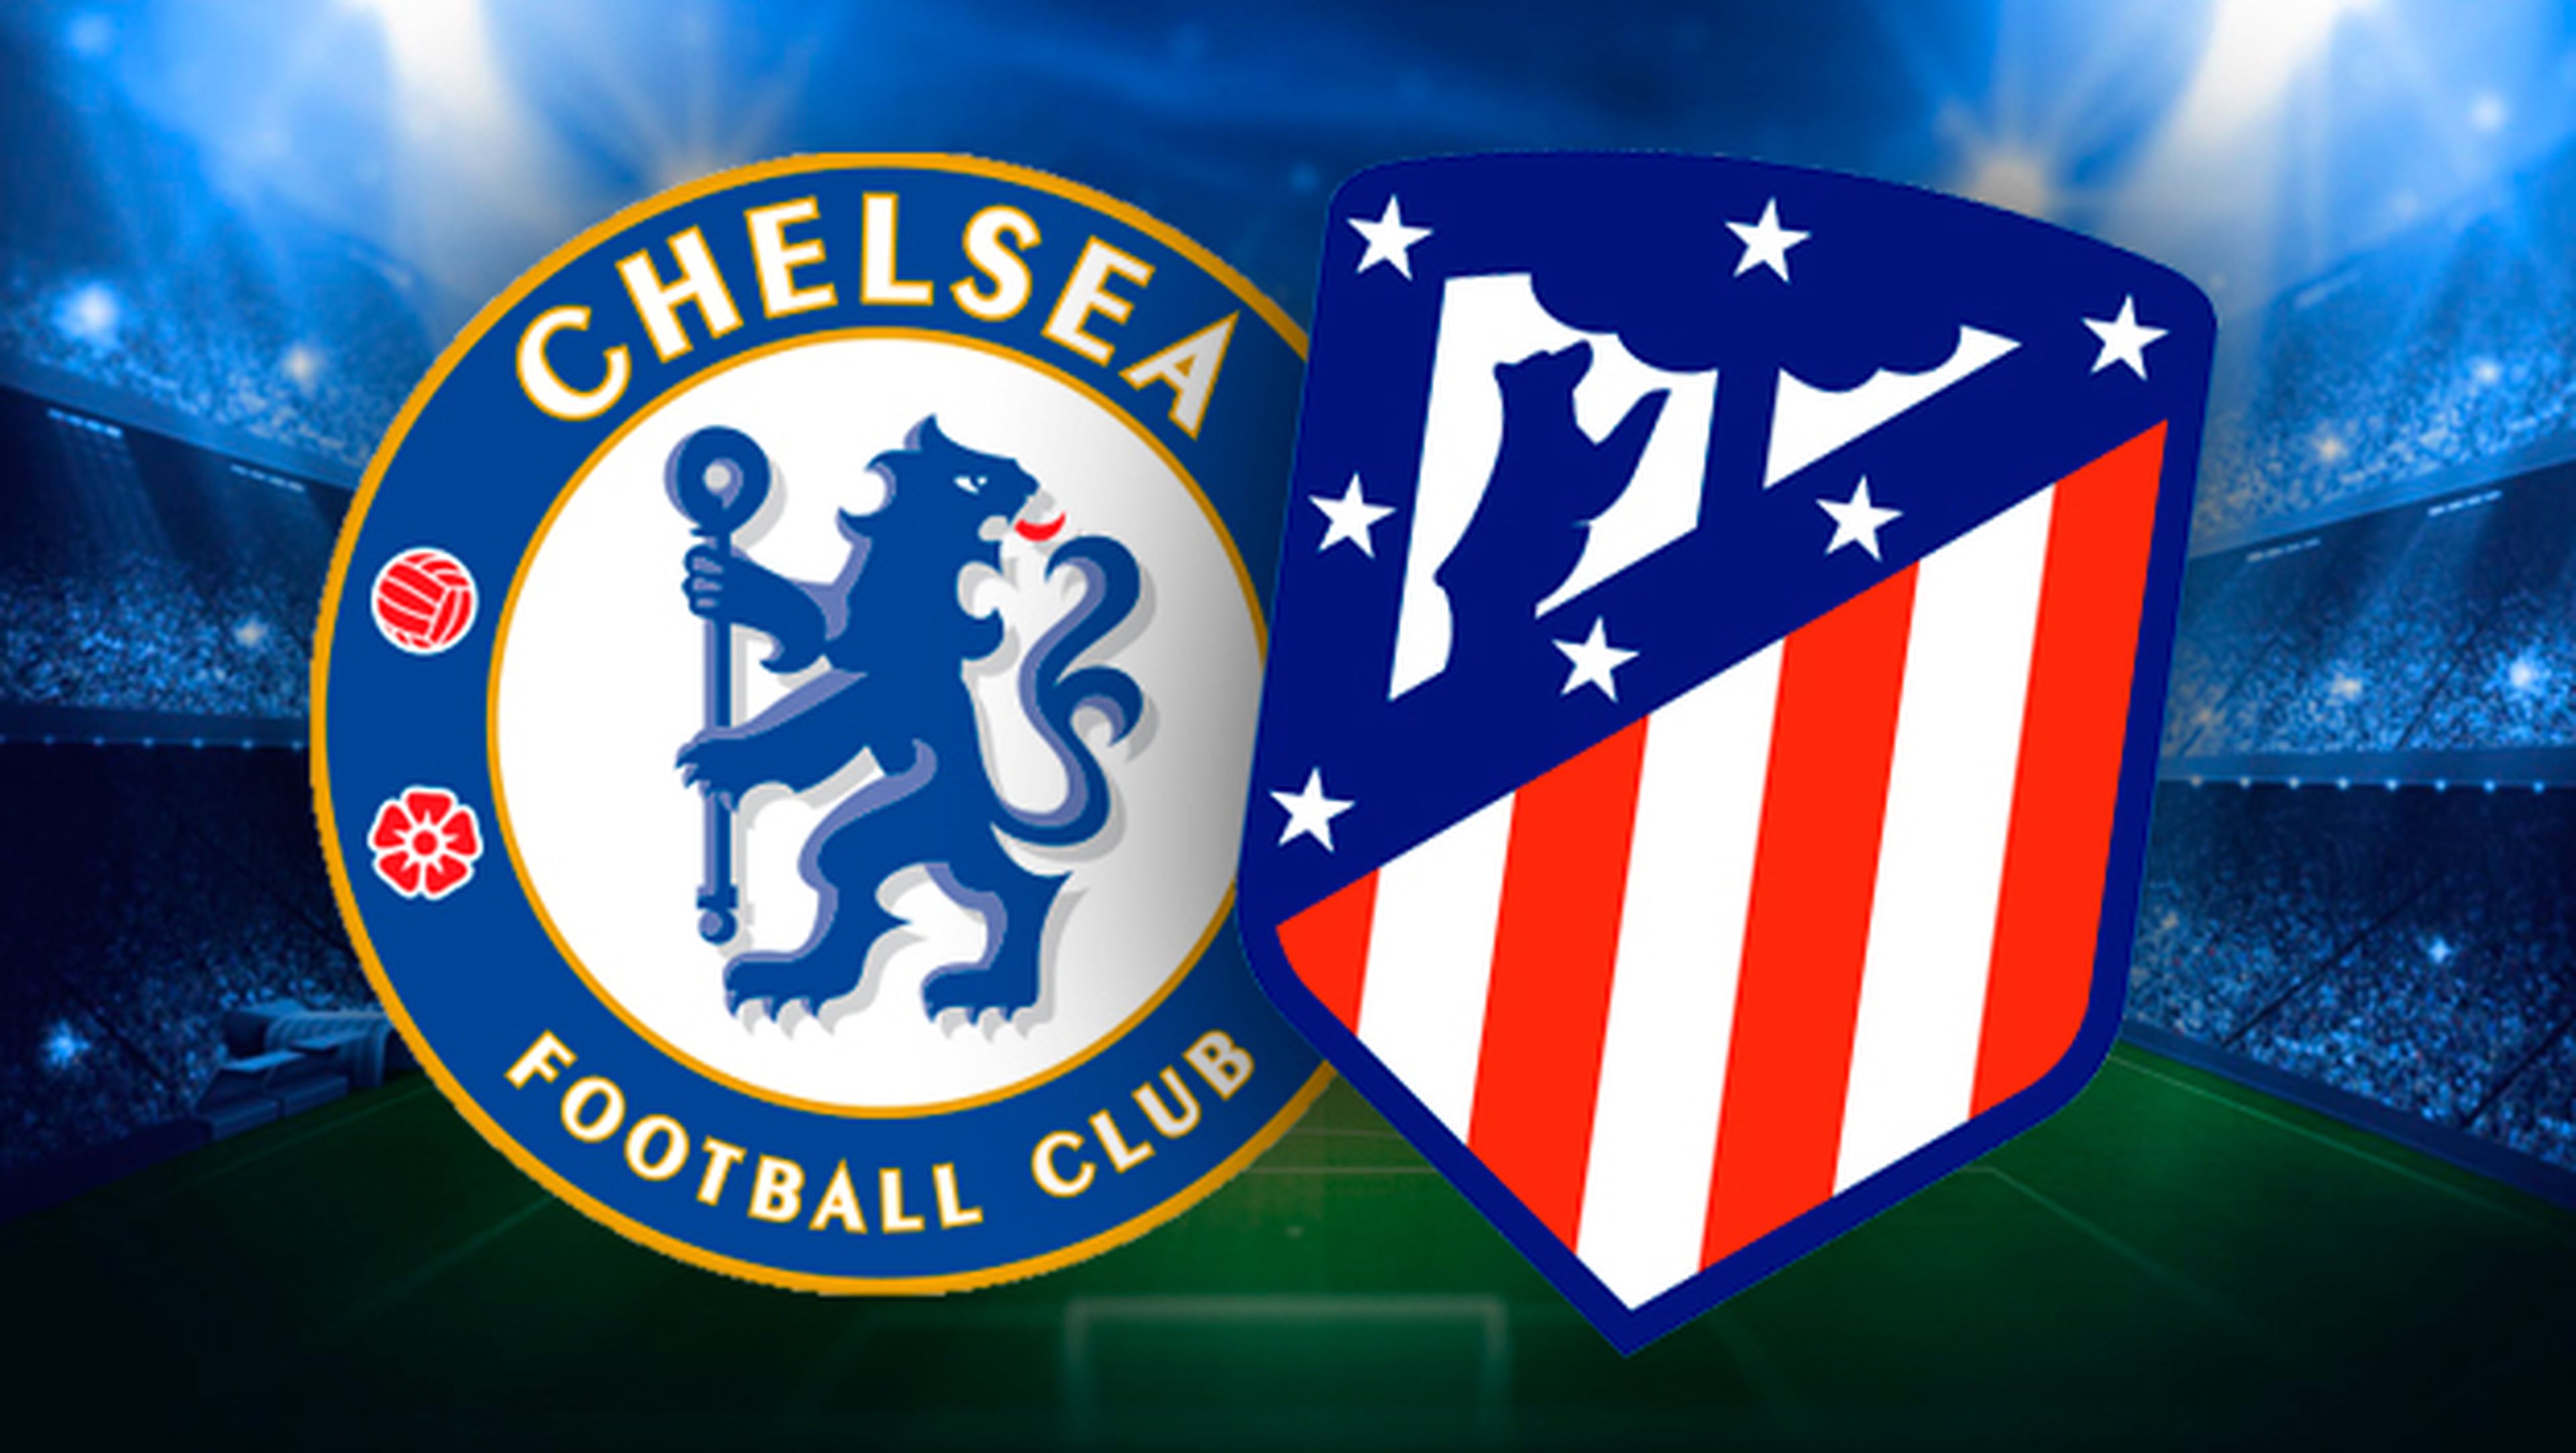 Ver el Chelsea - Atlético de Madrid en streaming online gratis.